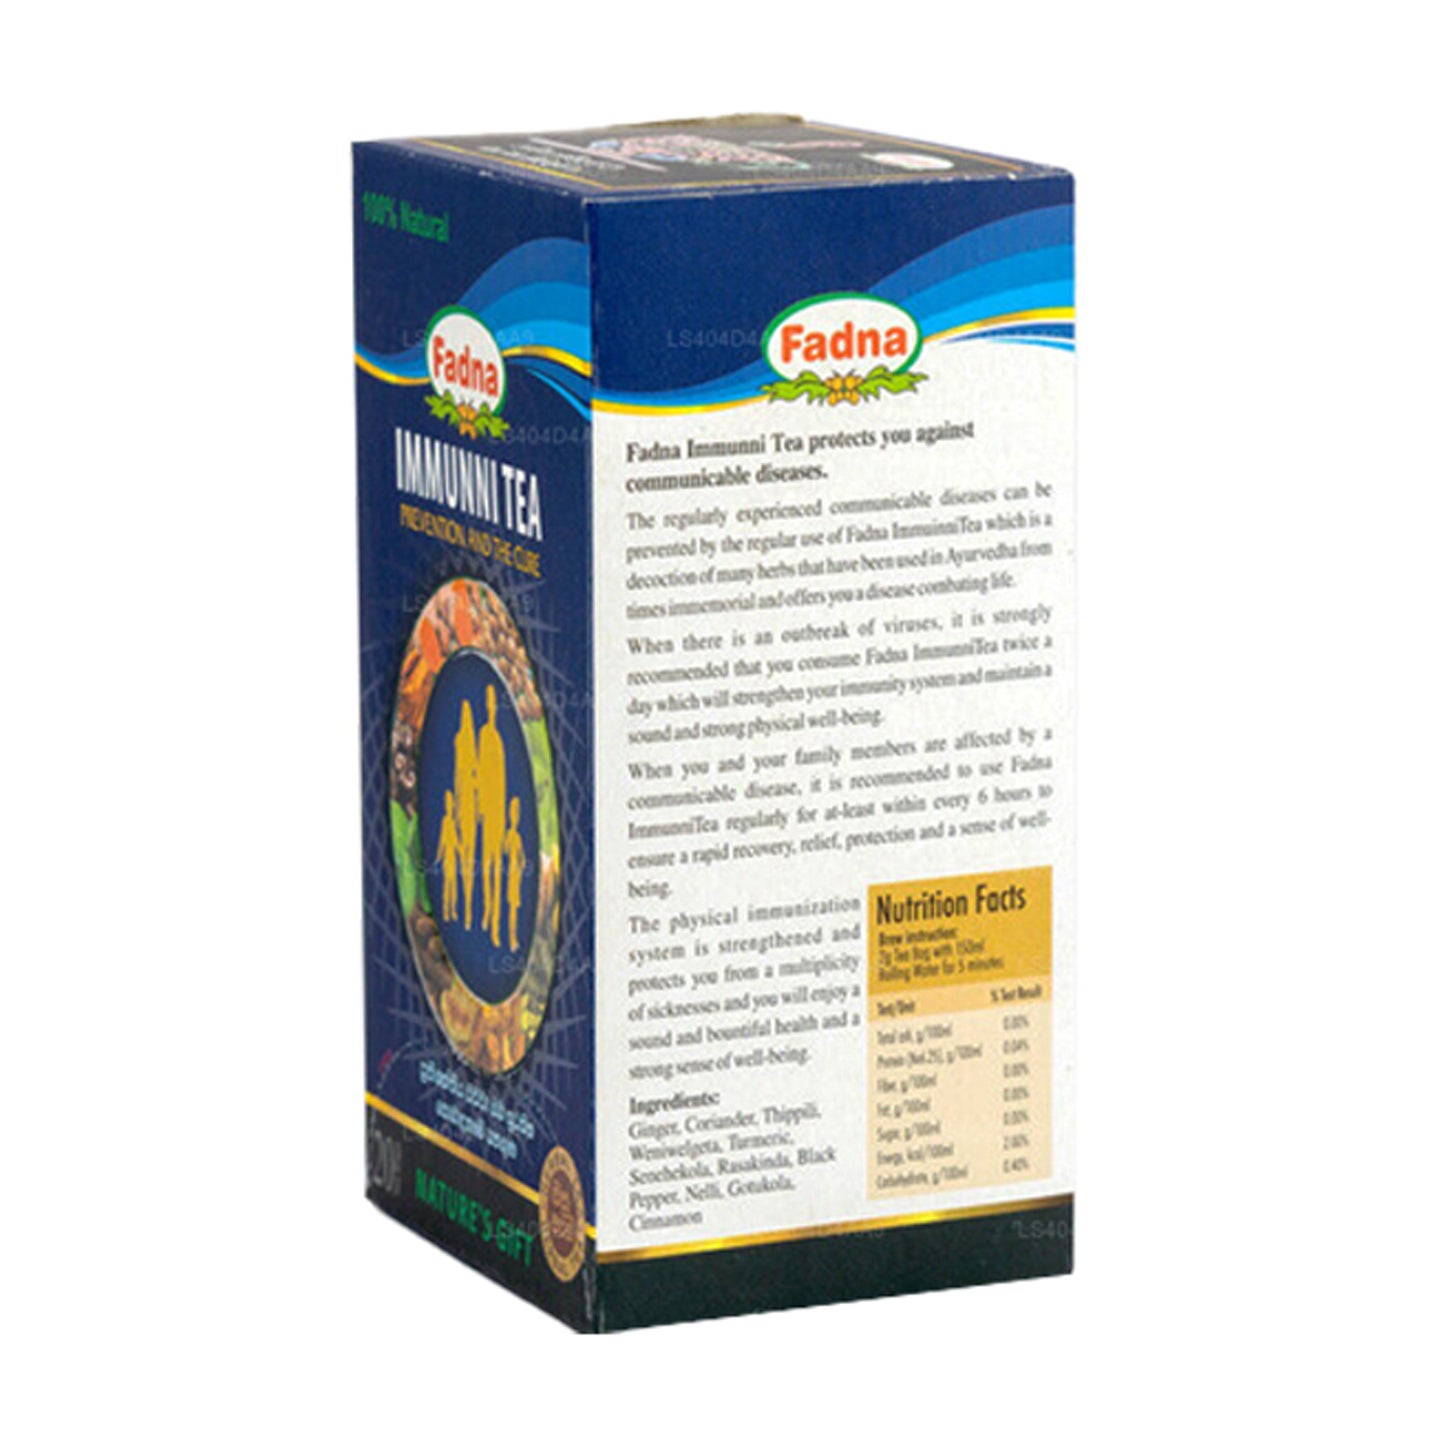 Fadna Immunni Tea (40 g) 20 Teebeutel